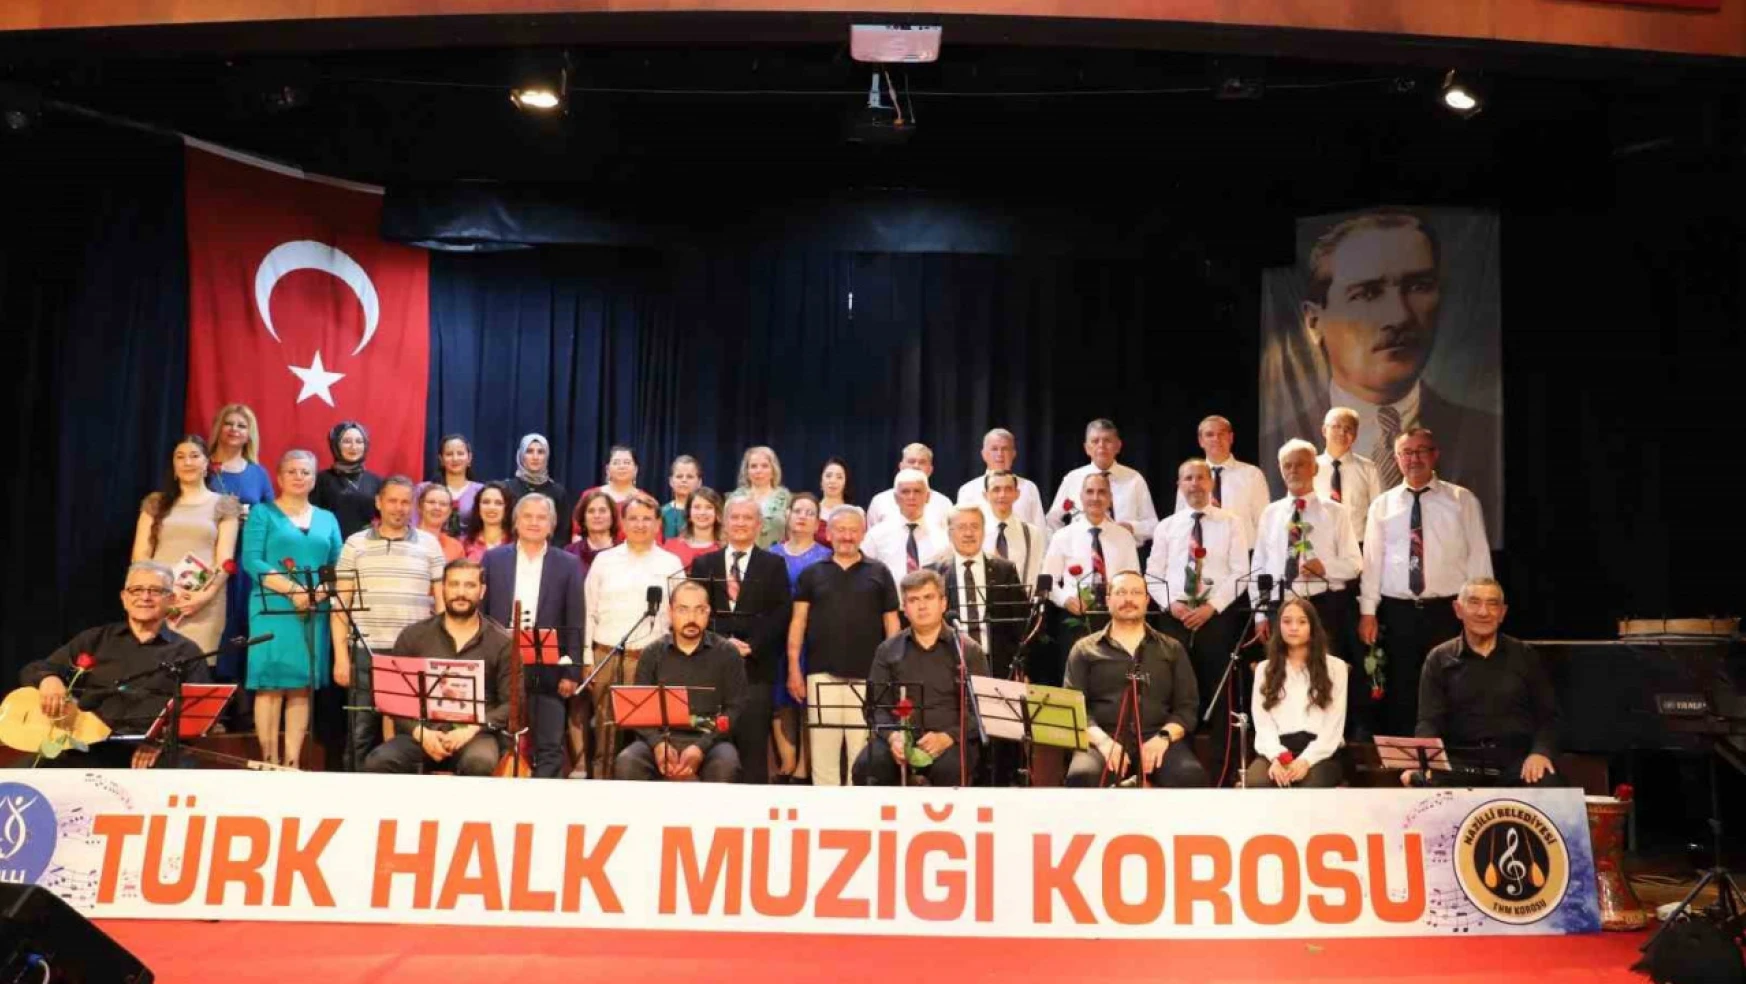 Nazilli Belediyesi Türk Halk Müziği Korosu'ndan Bahar Konseri